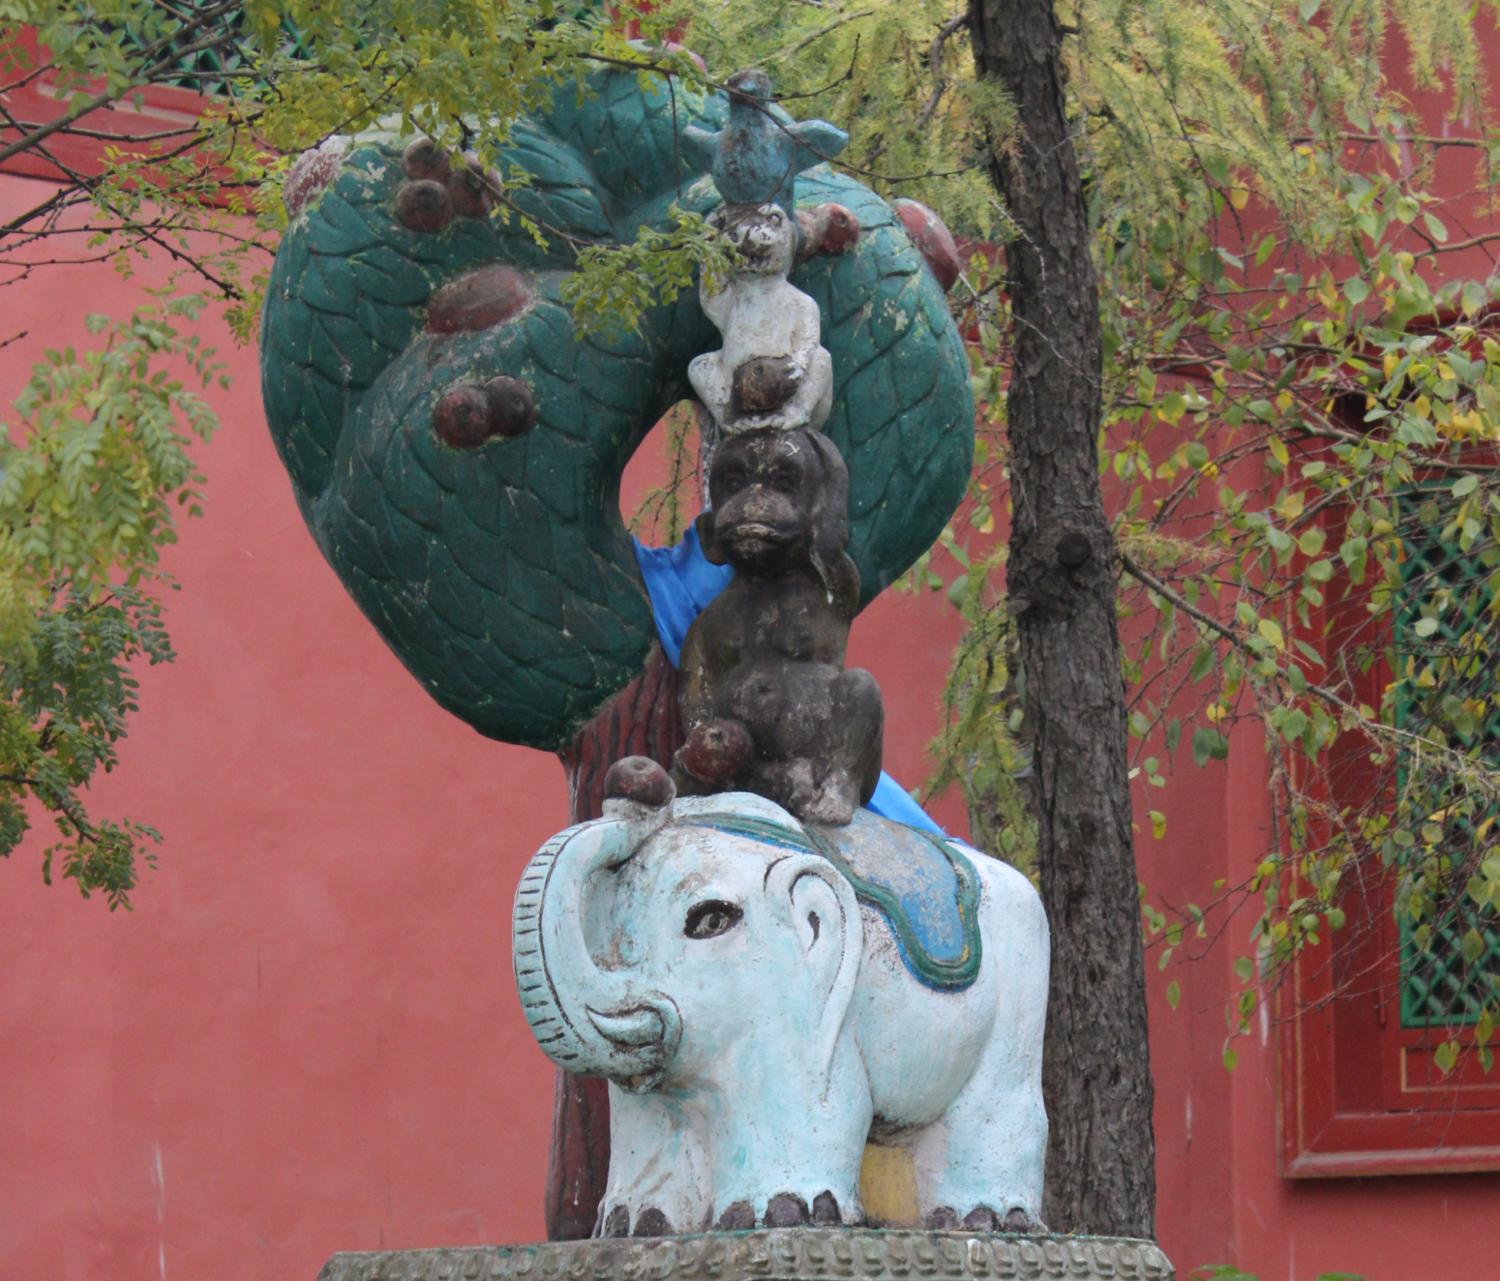 Die Statue von einem Elefanten, einem Affen, einen Hasen und einer Taube, die übereinander und unter einem Baum stehen